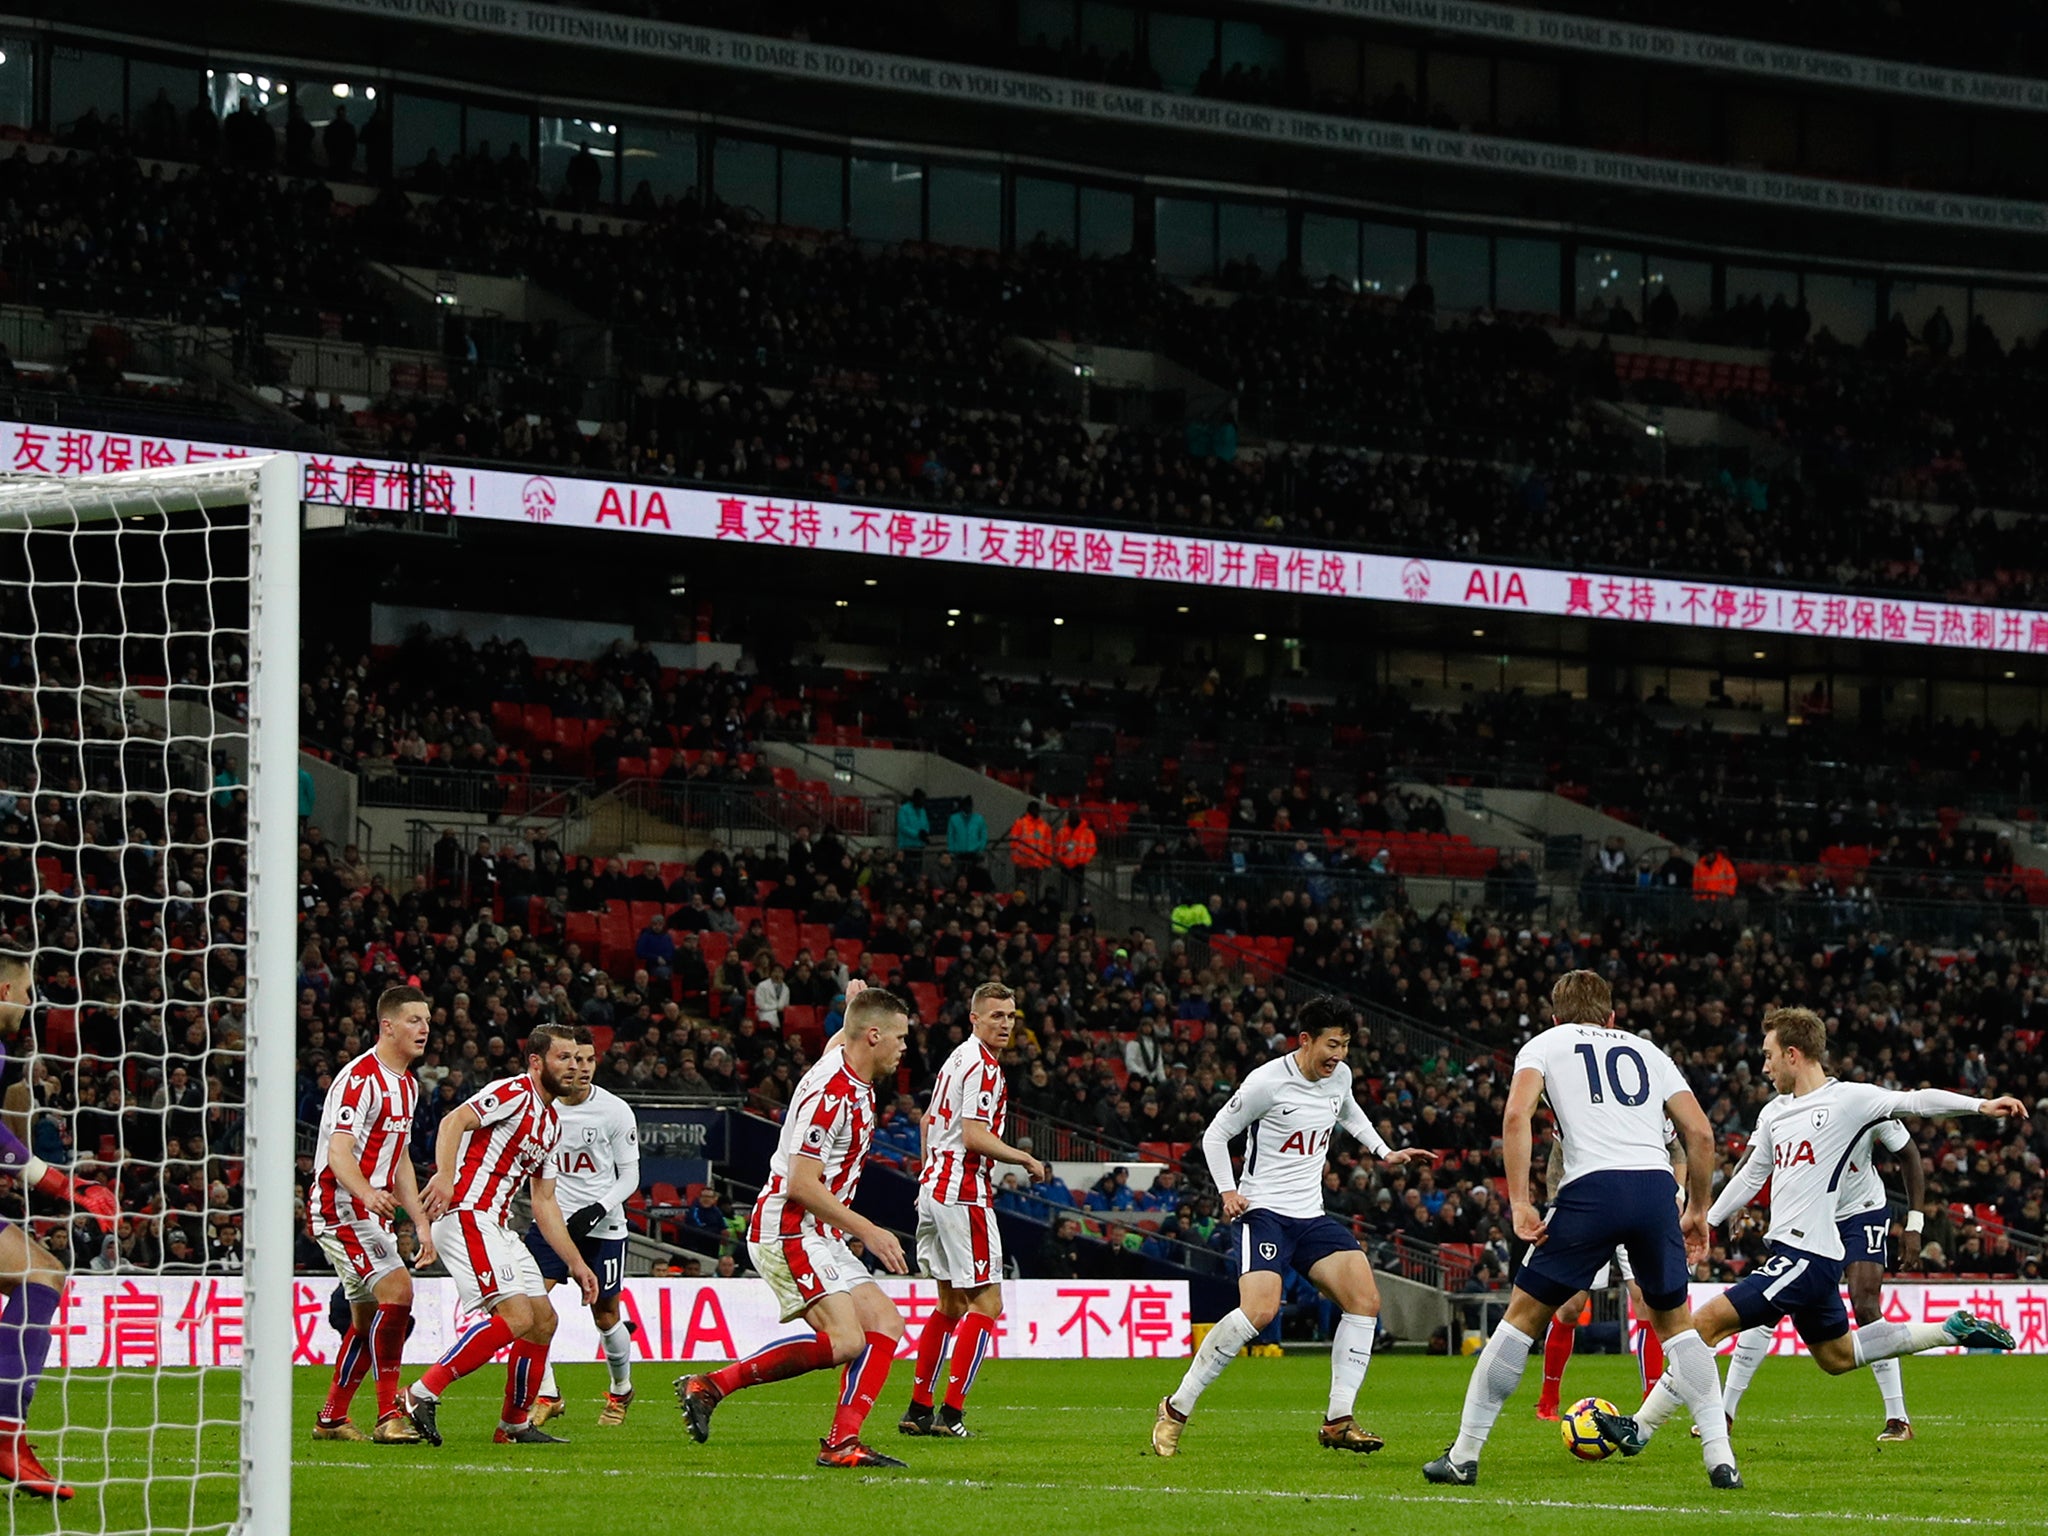 Christian Eriksen fires in Tottenham's fifth goal